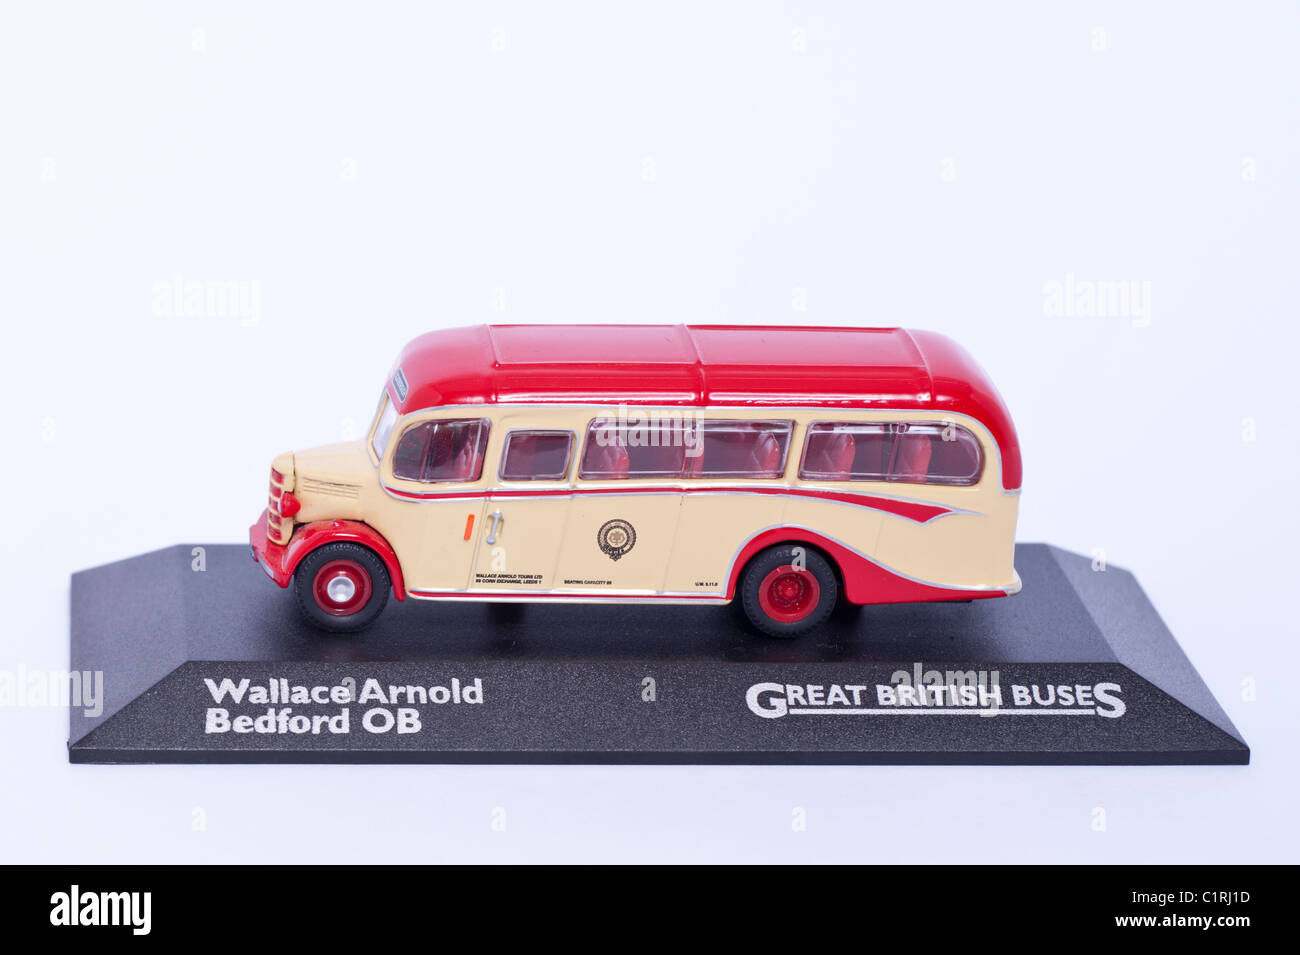 Un modèle Wallace Arnold Bedford OB Great British bus sur un fond blanc Banque D'Images